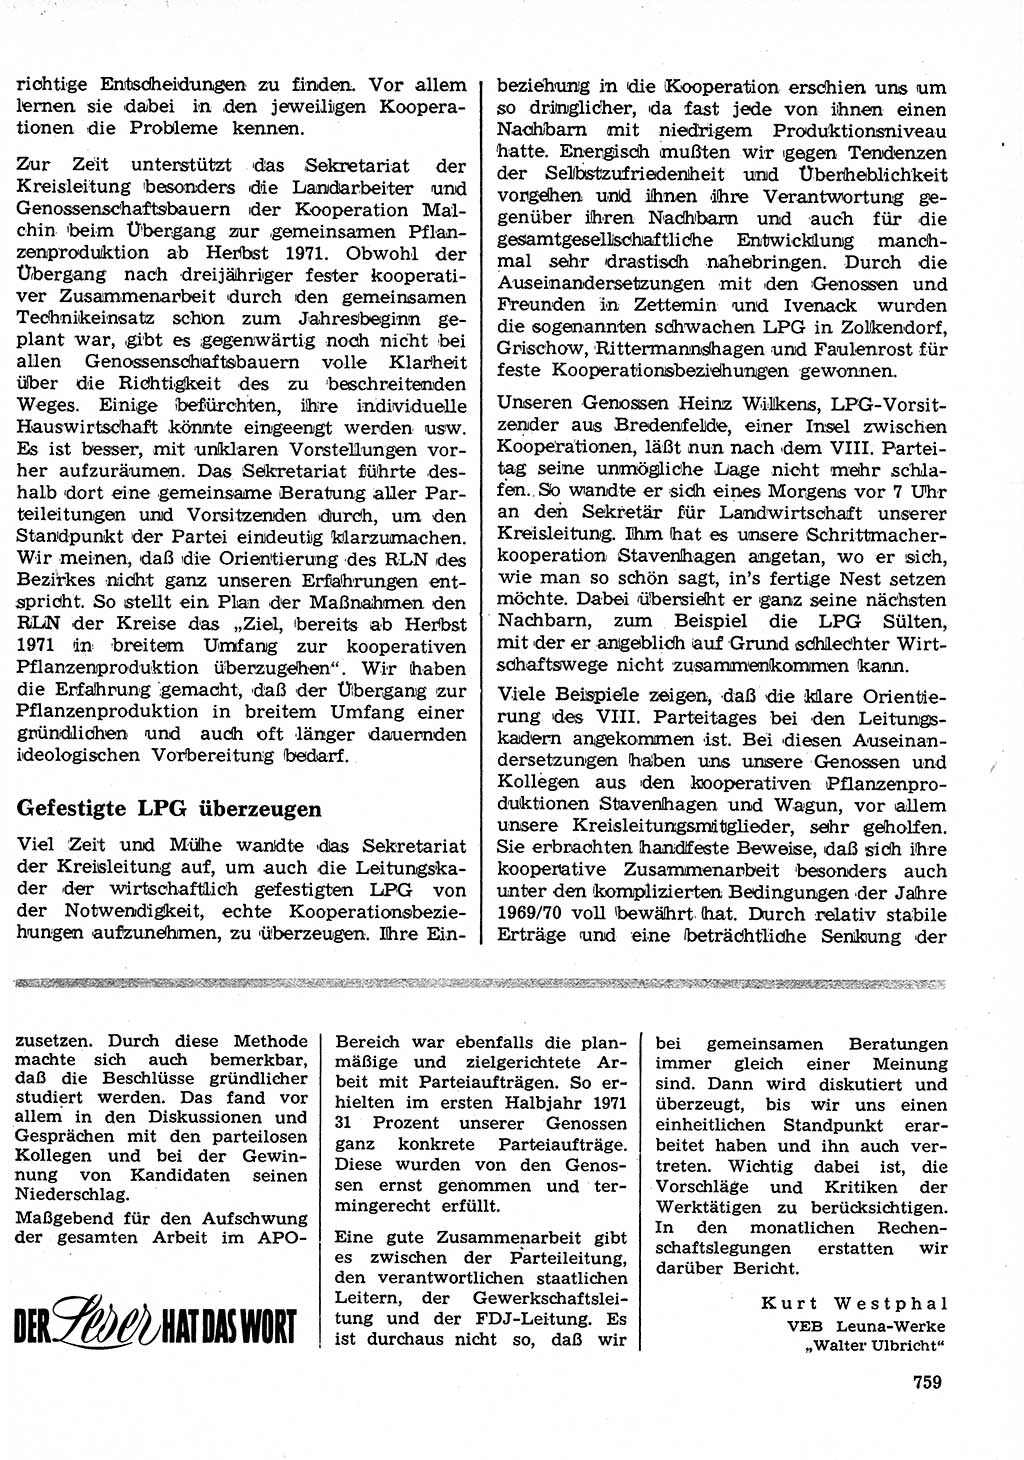 Neuer Weg (NW), Organ des Zentralkomitees (ZK) der SED (Sozialistische Einheitspartei Deutschlands) für Fragen des Parteilebens, 26. Jahrgang [Deutsche Demokratische Republik (DDR)] 1971, Seite 759 (NW ZK SED DDR 1971, S. 759)